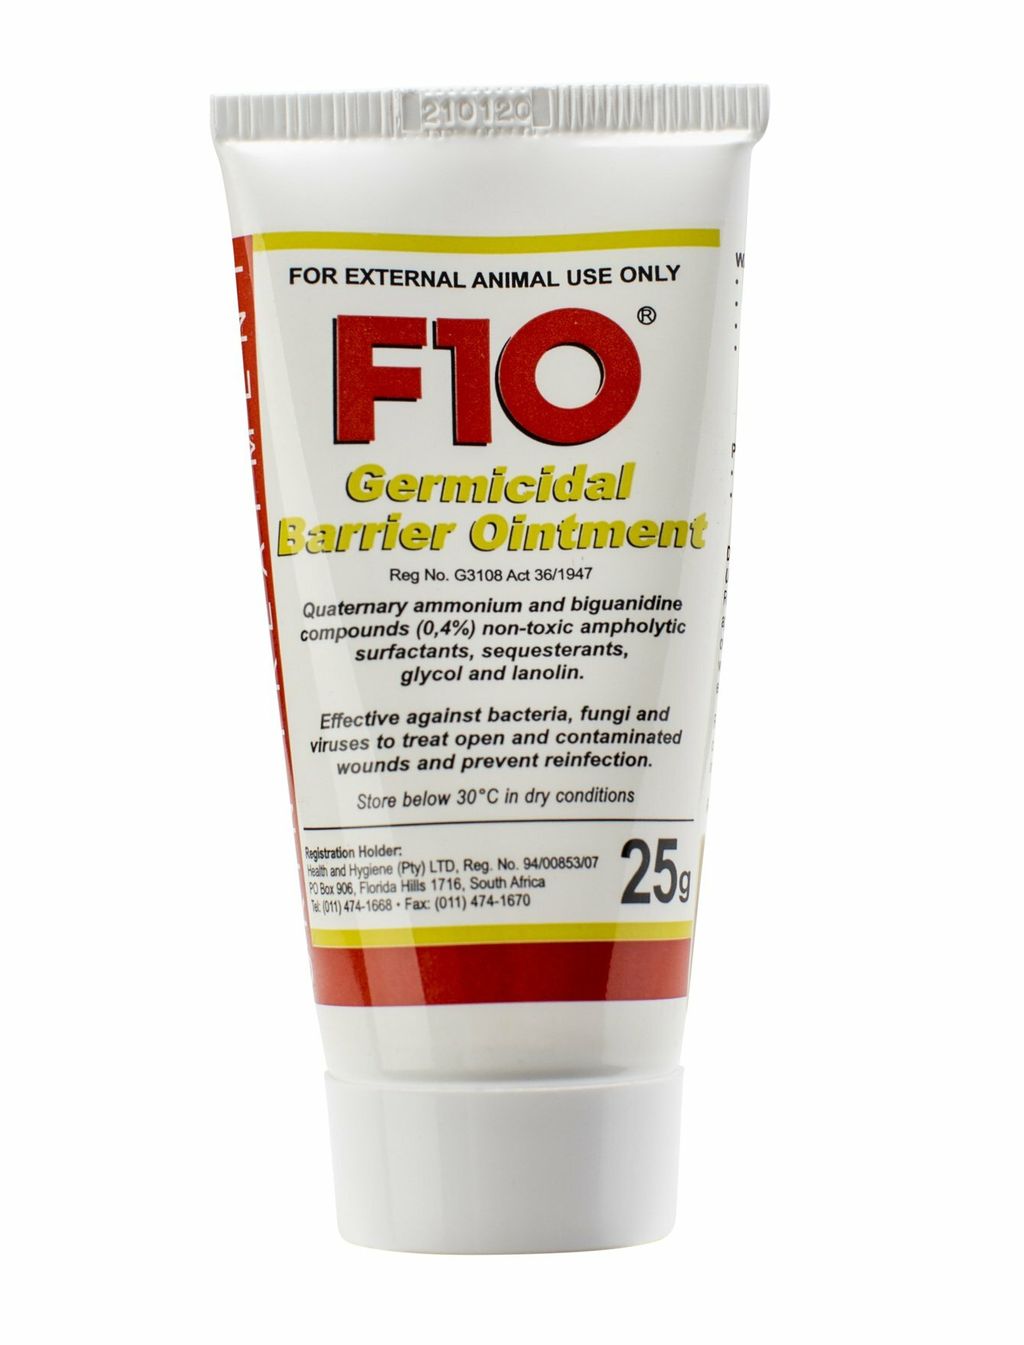 F10 Germicidal Ointment 25g.jpg